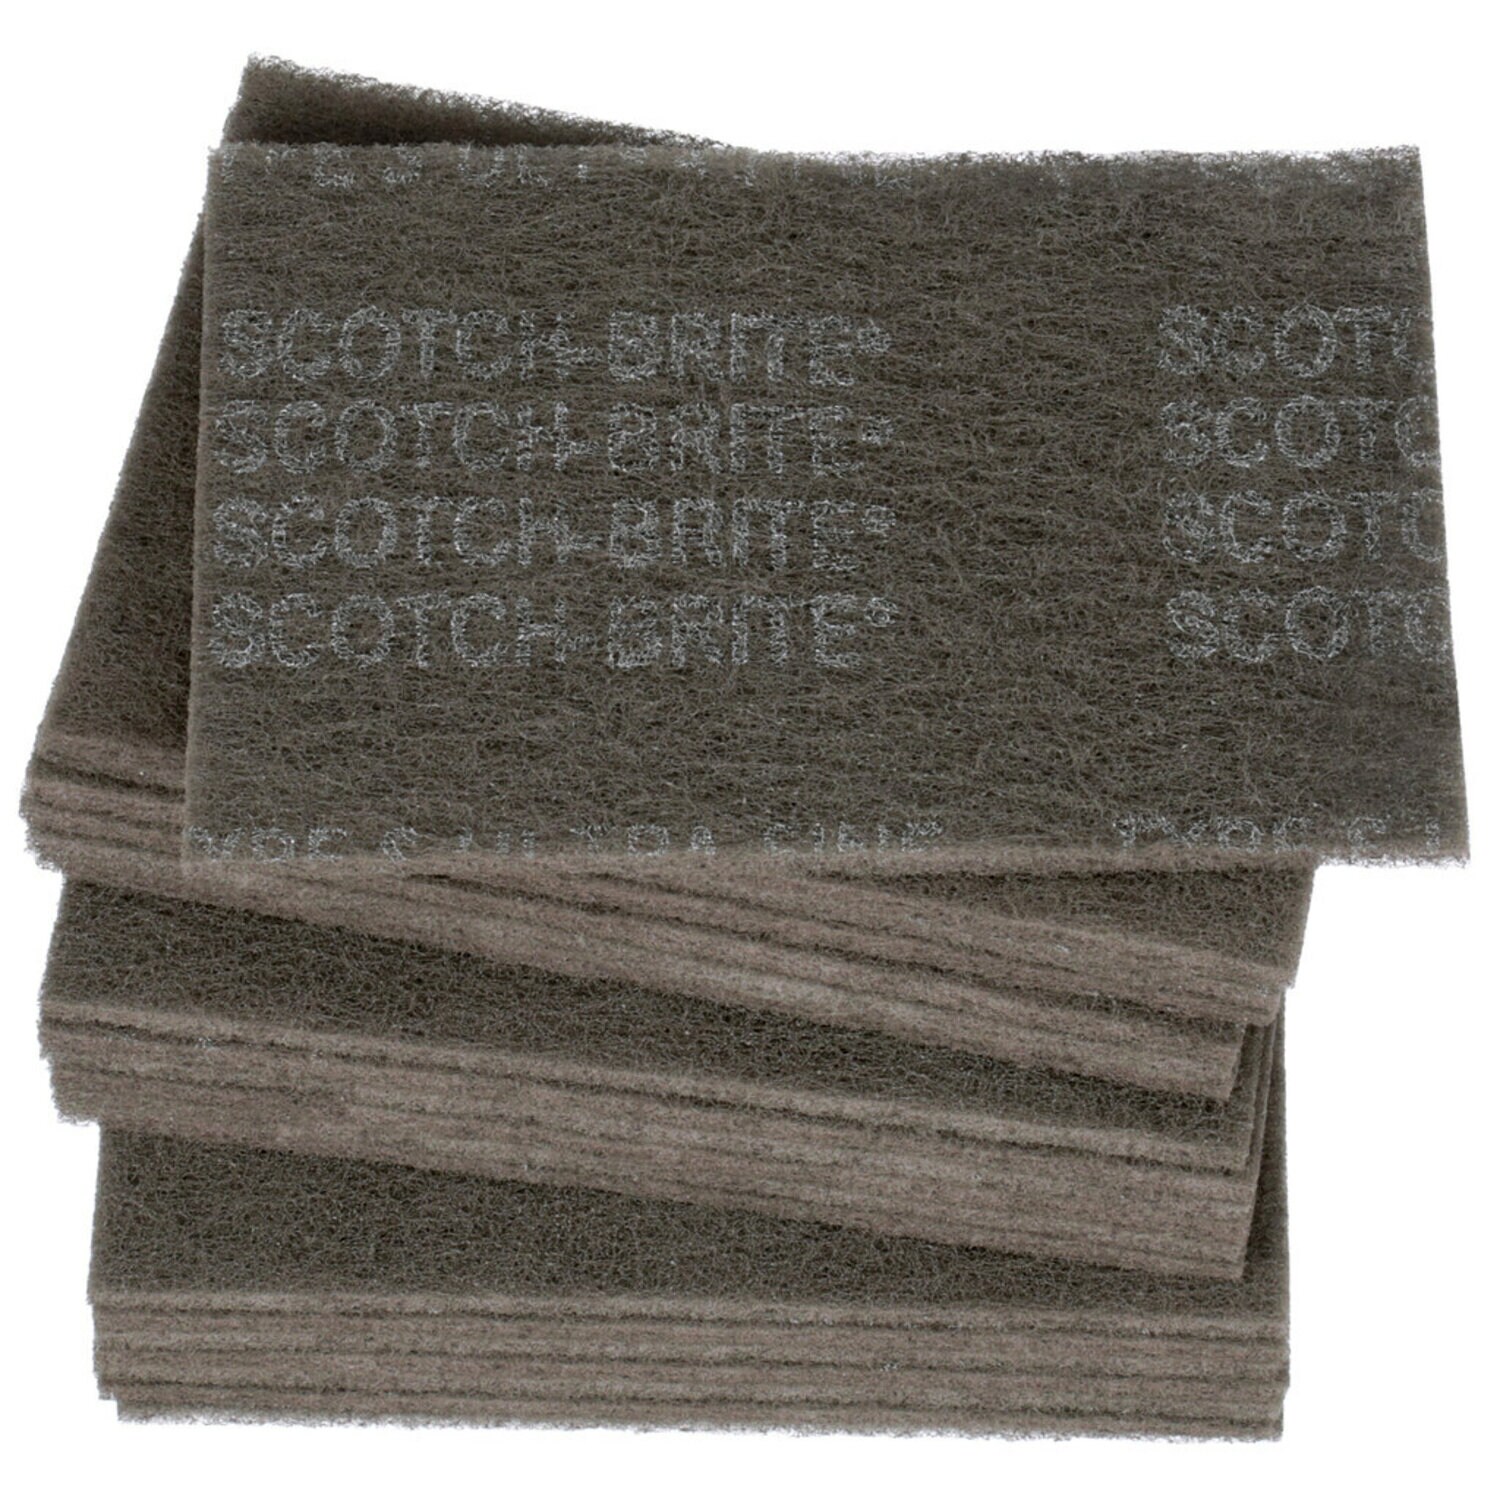 7000045983 - Scotch-Brite Hand Pad 7448, HP-HP, SiC Ultra Fine, Gray, 6 in x 9 in,
20/Carton, 60 ea/Case